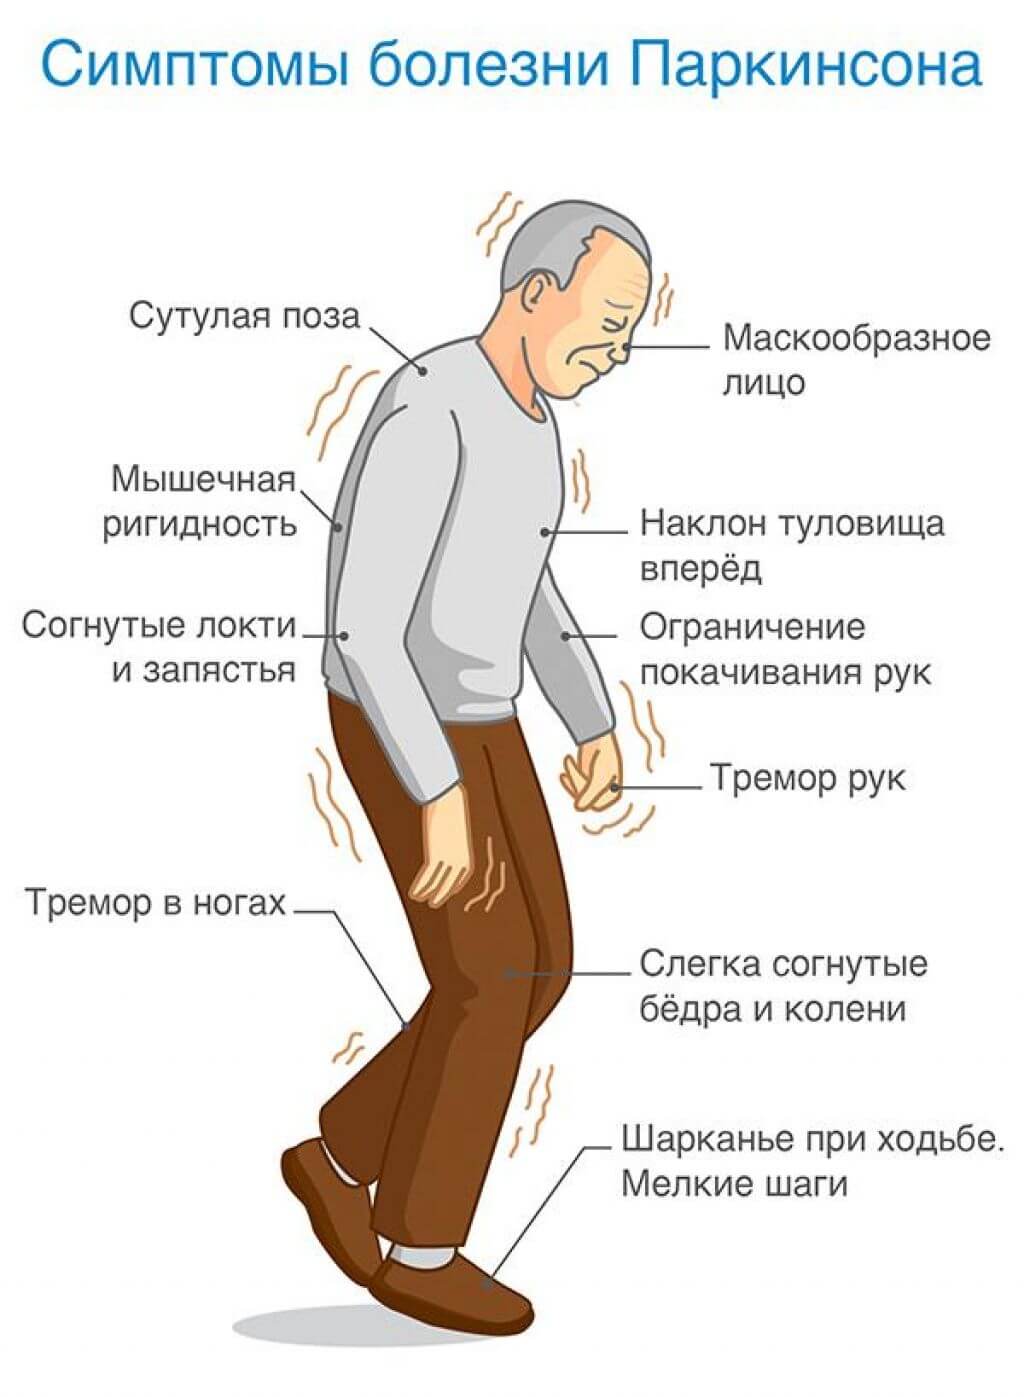 Деменция — признаки и лечение деменции в Киеве, в диагностической клинике Vivere